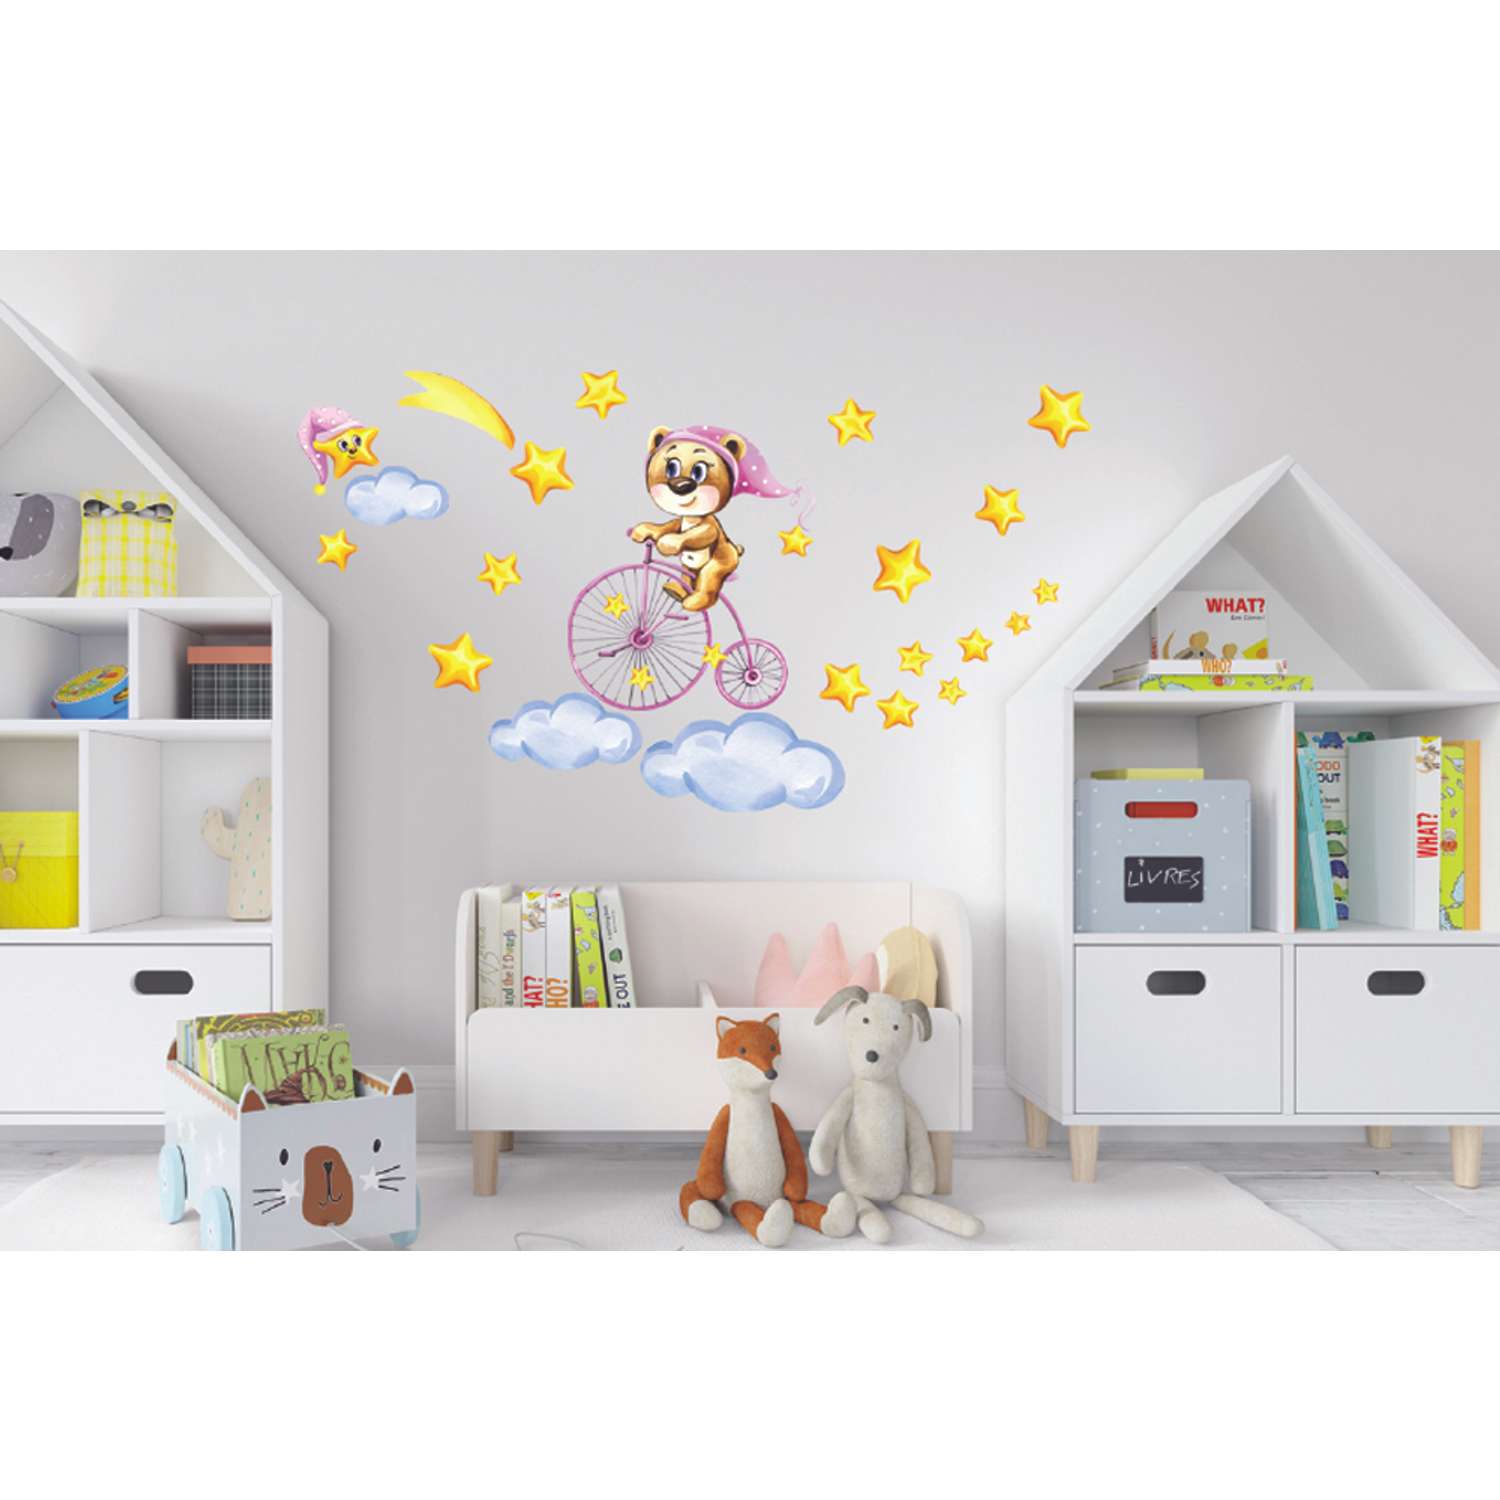 Наклейка оформительская ГК Горчаков в детскую комнату дочке с рисунком мишка для декора - фото 3